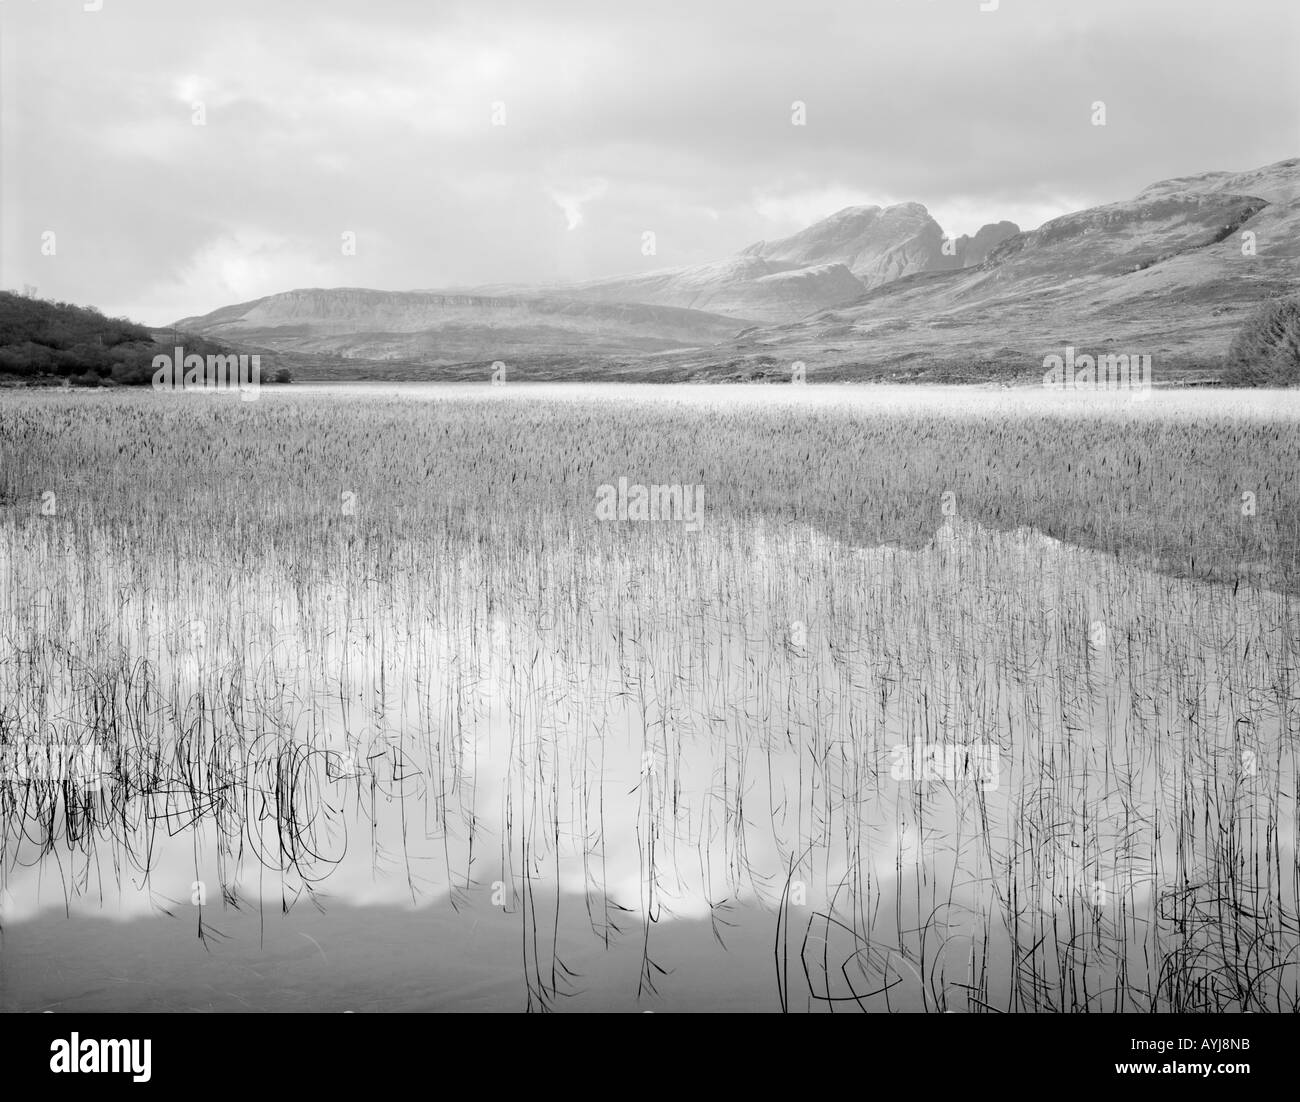 Le distant hills se reflètent dans les eaux calmes du Loch Cill Chriosd avec Selkirk Arms dans la distance, l'île de Skye, Écosse Banque D'Images